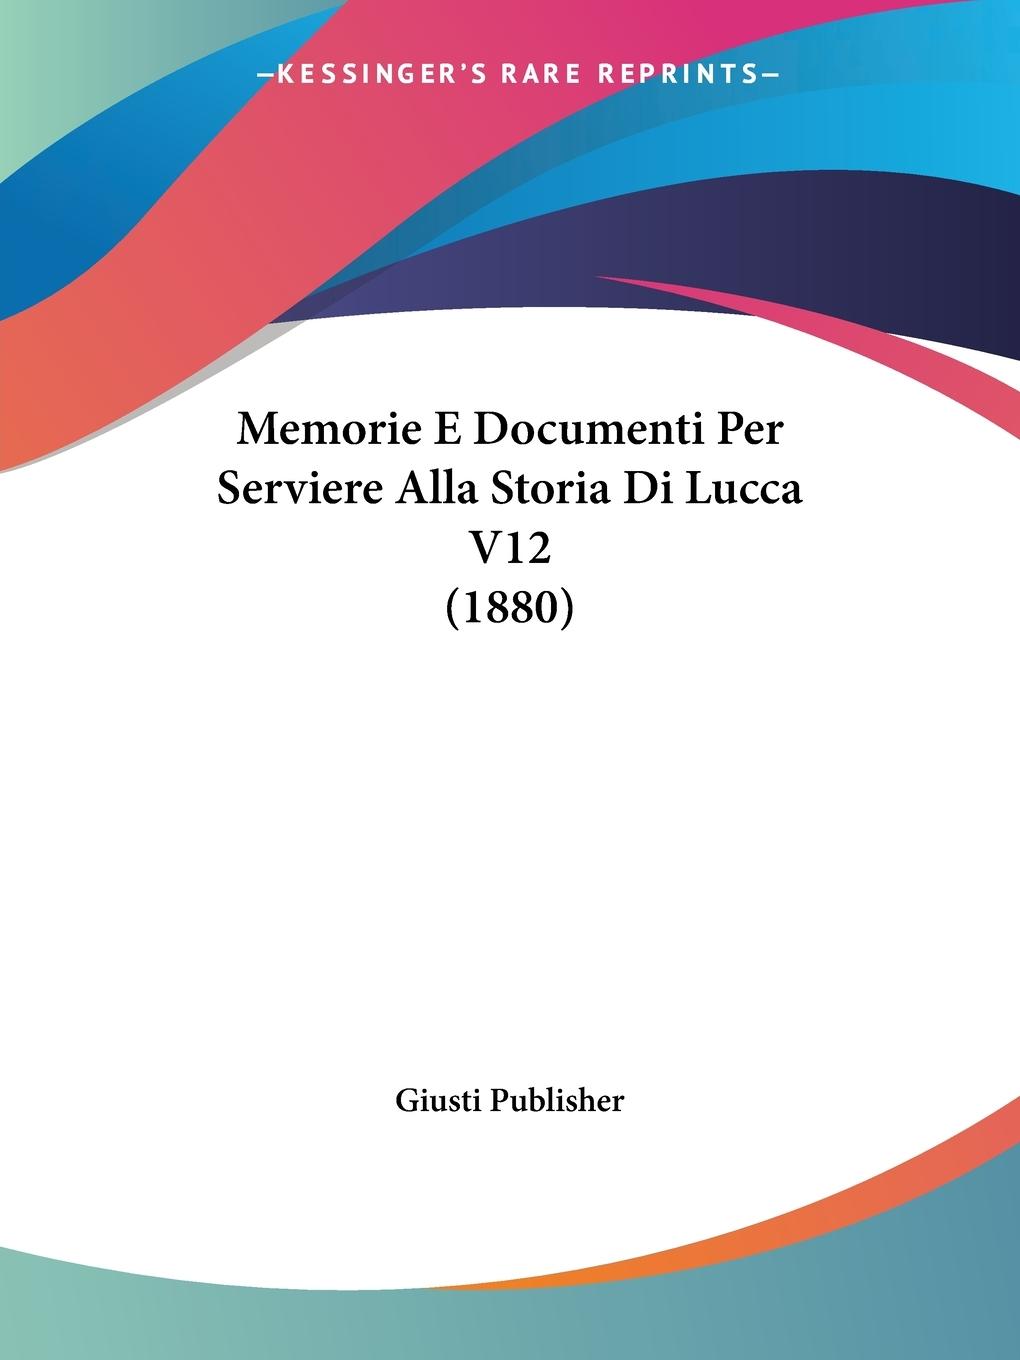 Memorie E Documenti Per Serviere Alla Storia Di Lucca V12 (1880) - Giusti Publisher